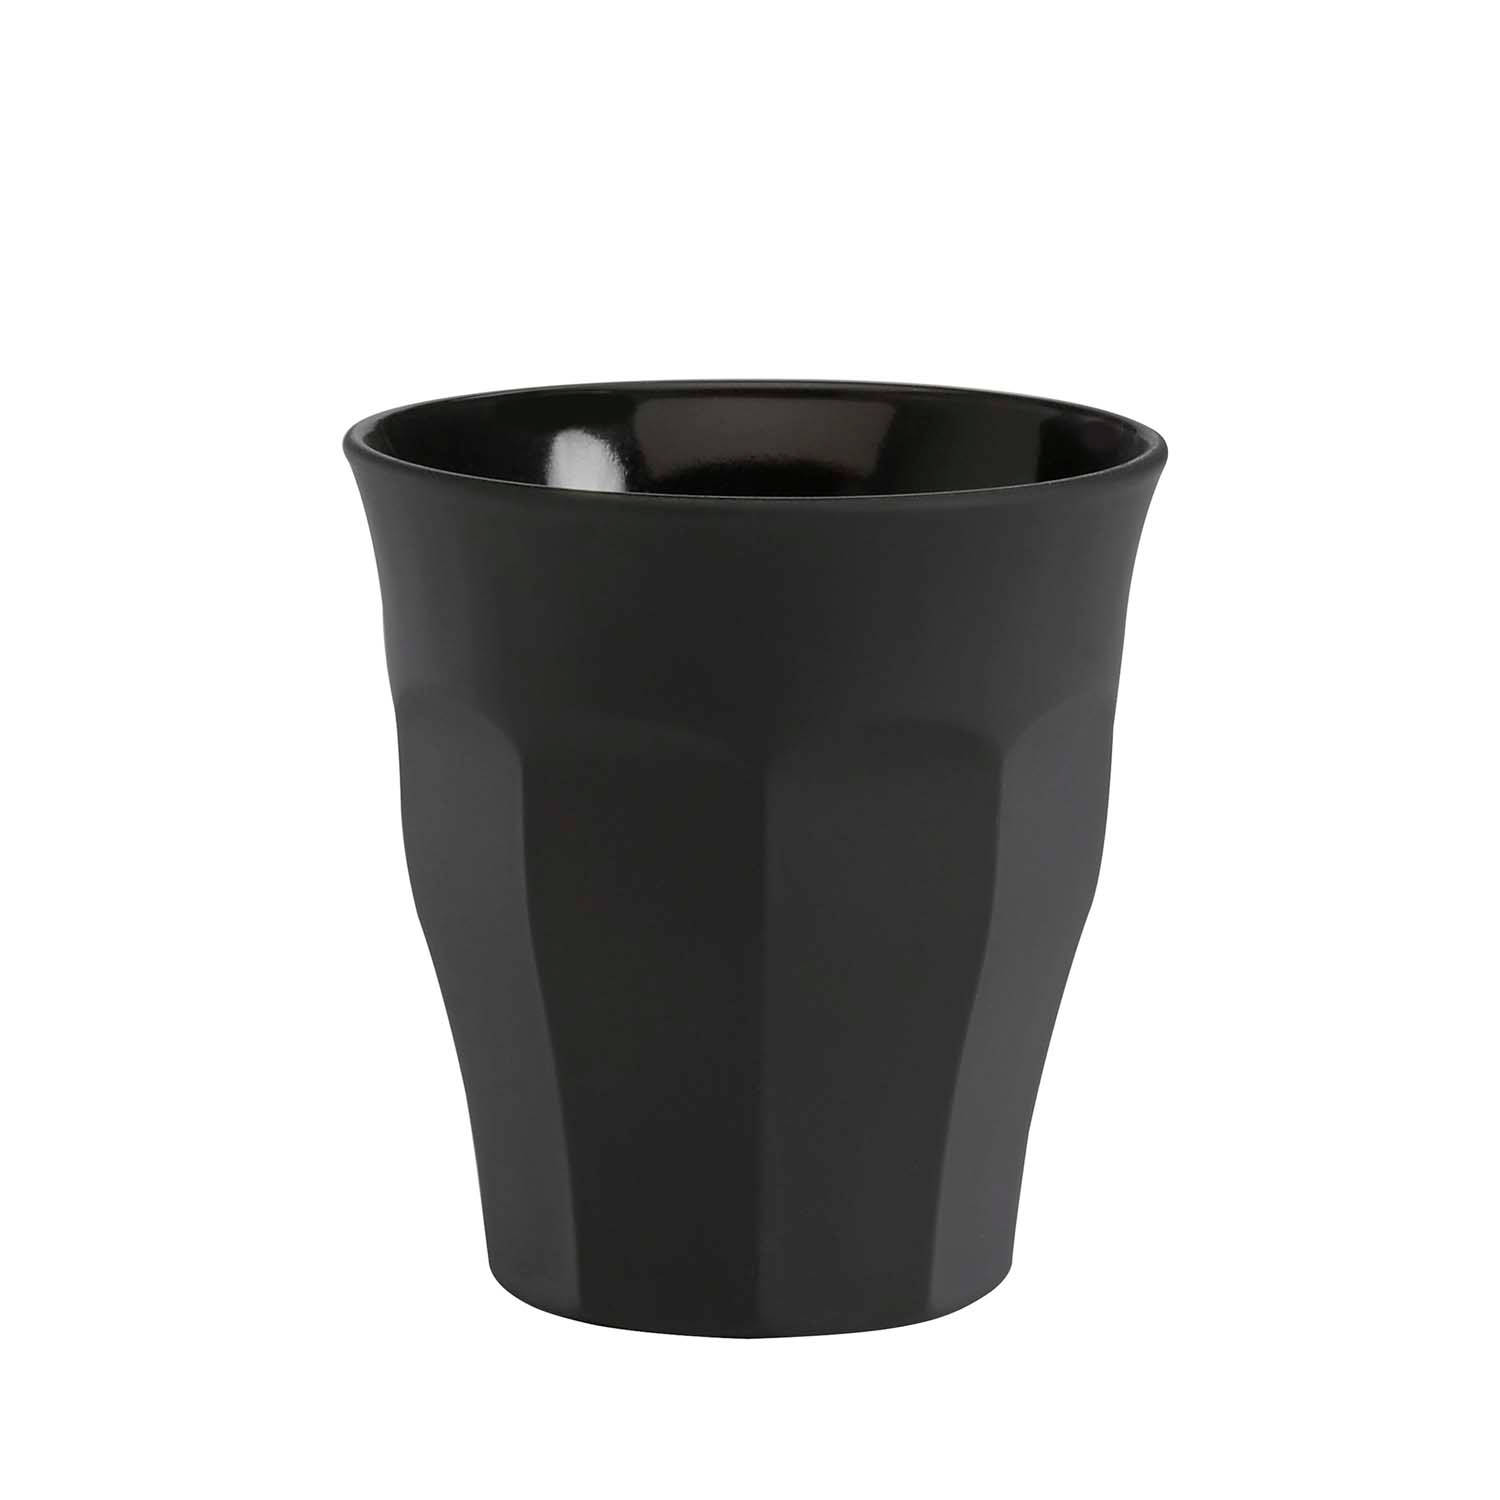 Absurd laden Expliciet Duralex Picardie Espressoglas - 9 cl - zwart | Blokker